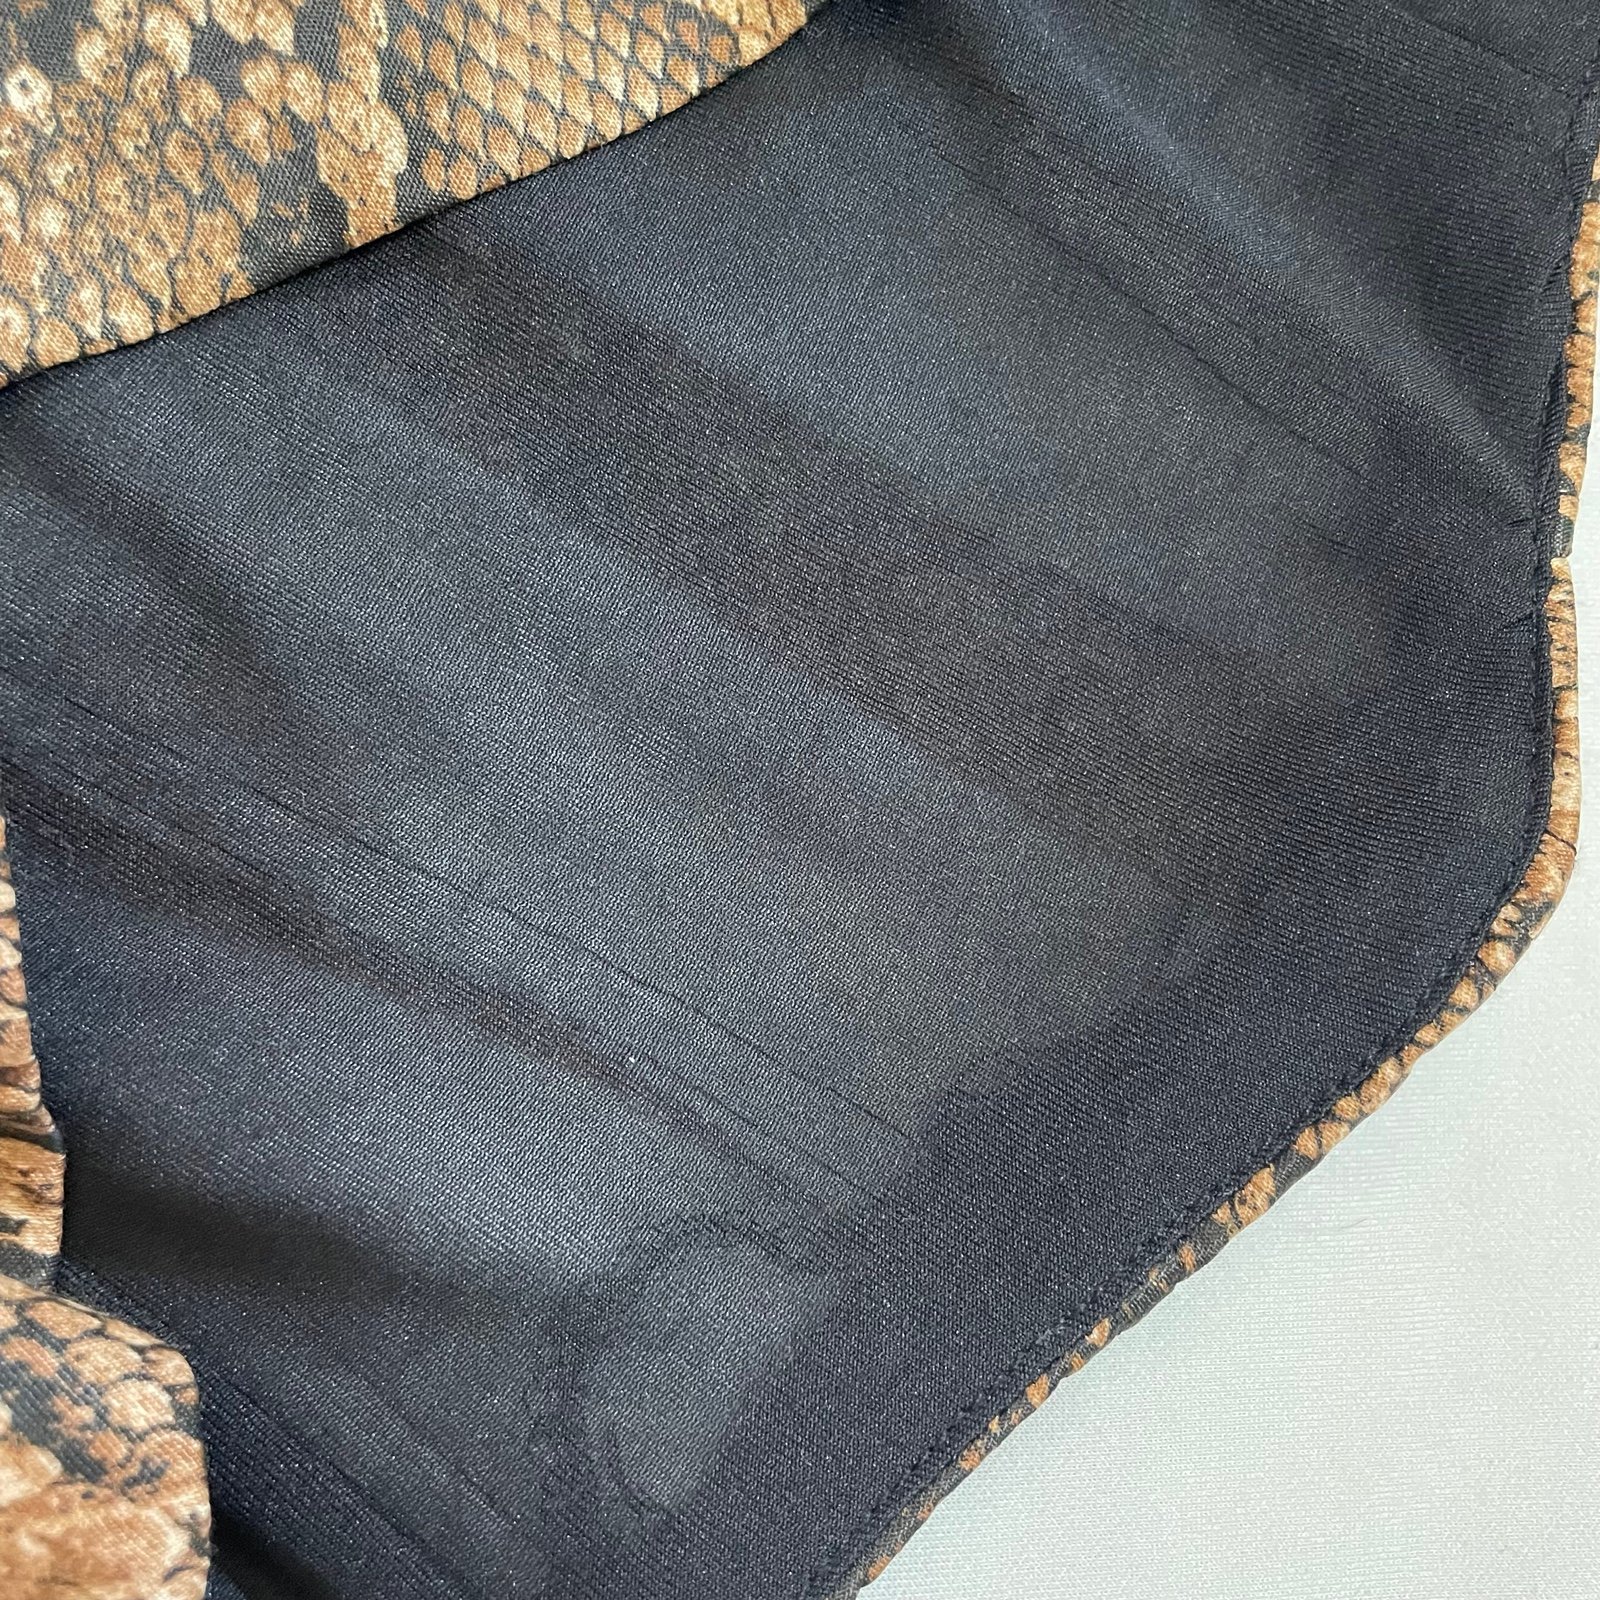 Fashion NWT New Zara Snake Print Crop Top Corset Size S LdRkPyh7D Fashion